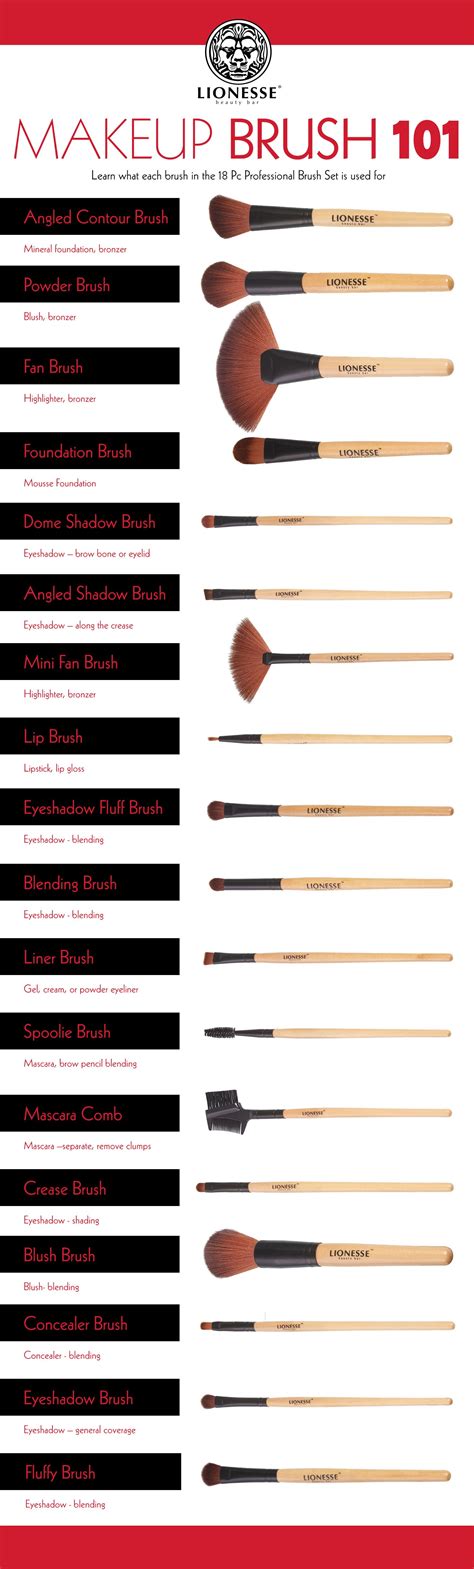 makeup brush 101 infographic makeup pinterest makeup